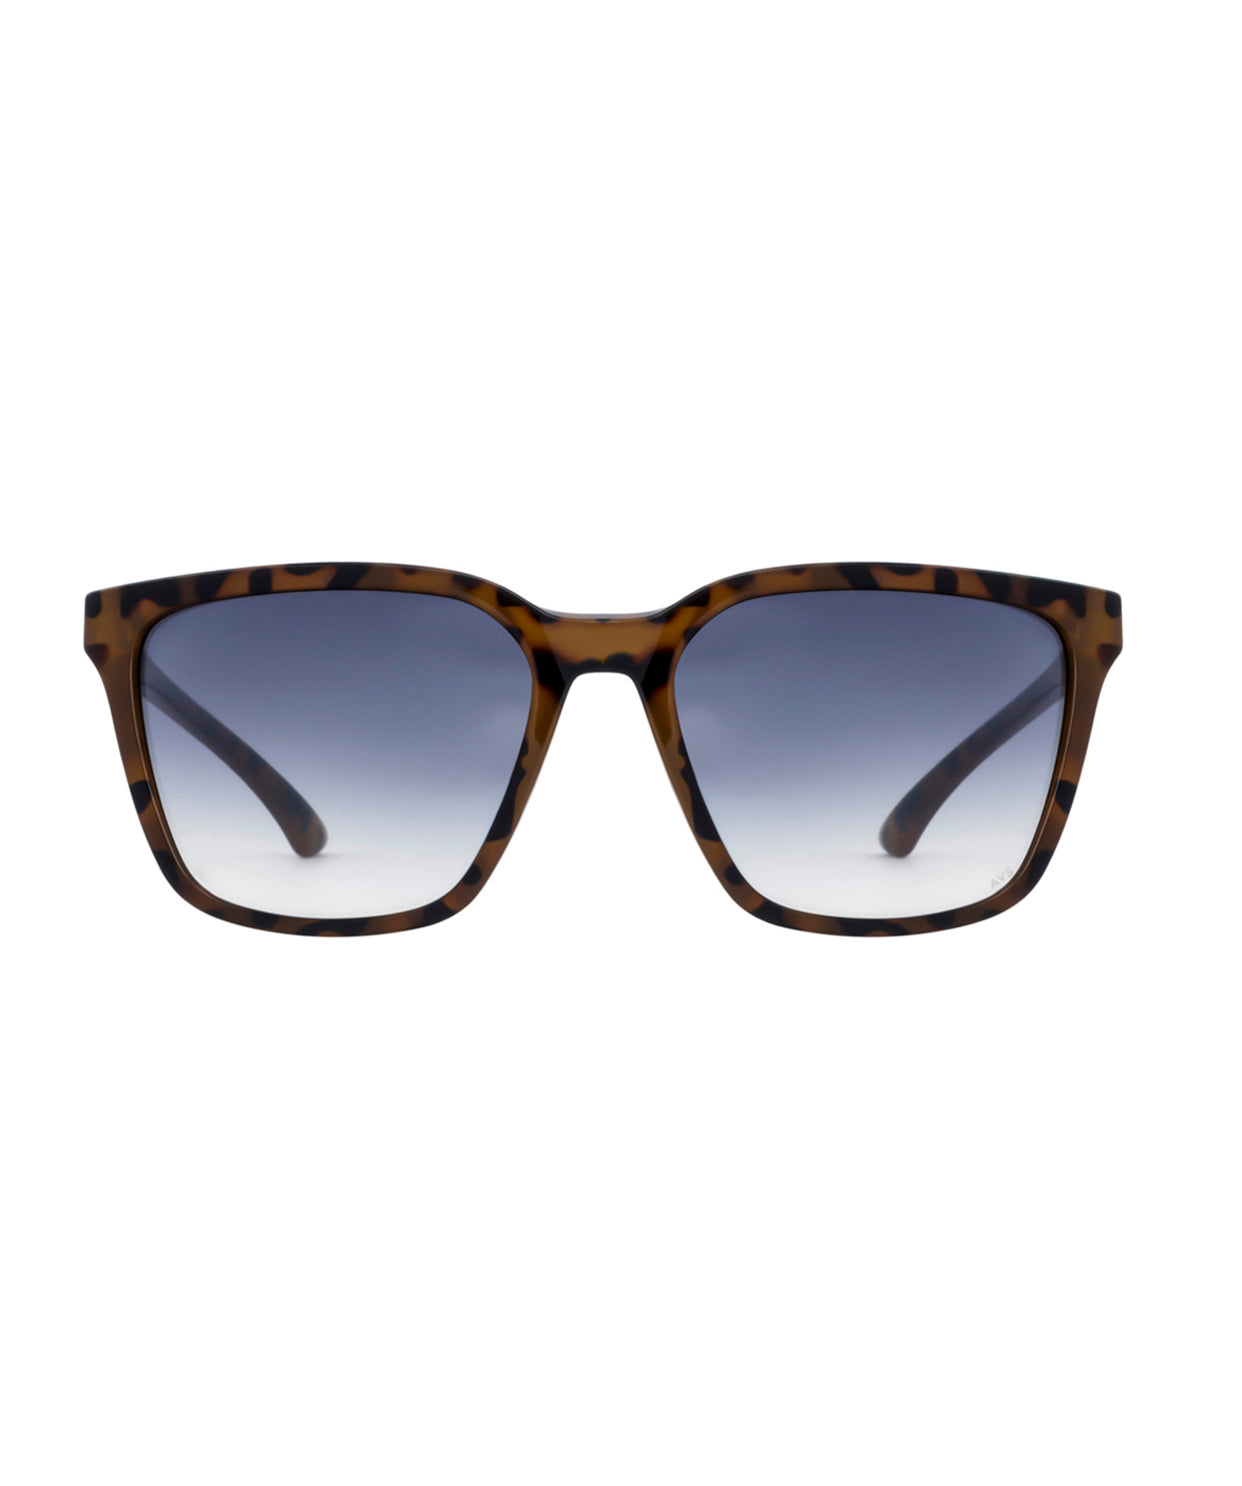 Buy Burberry Sunglasses For Men (CS648)